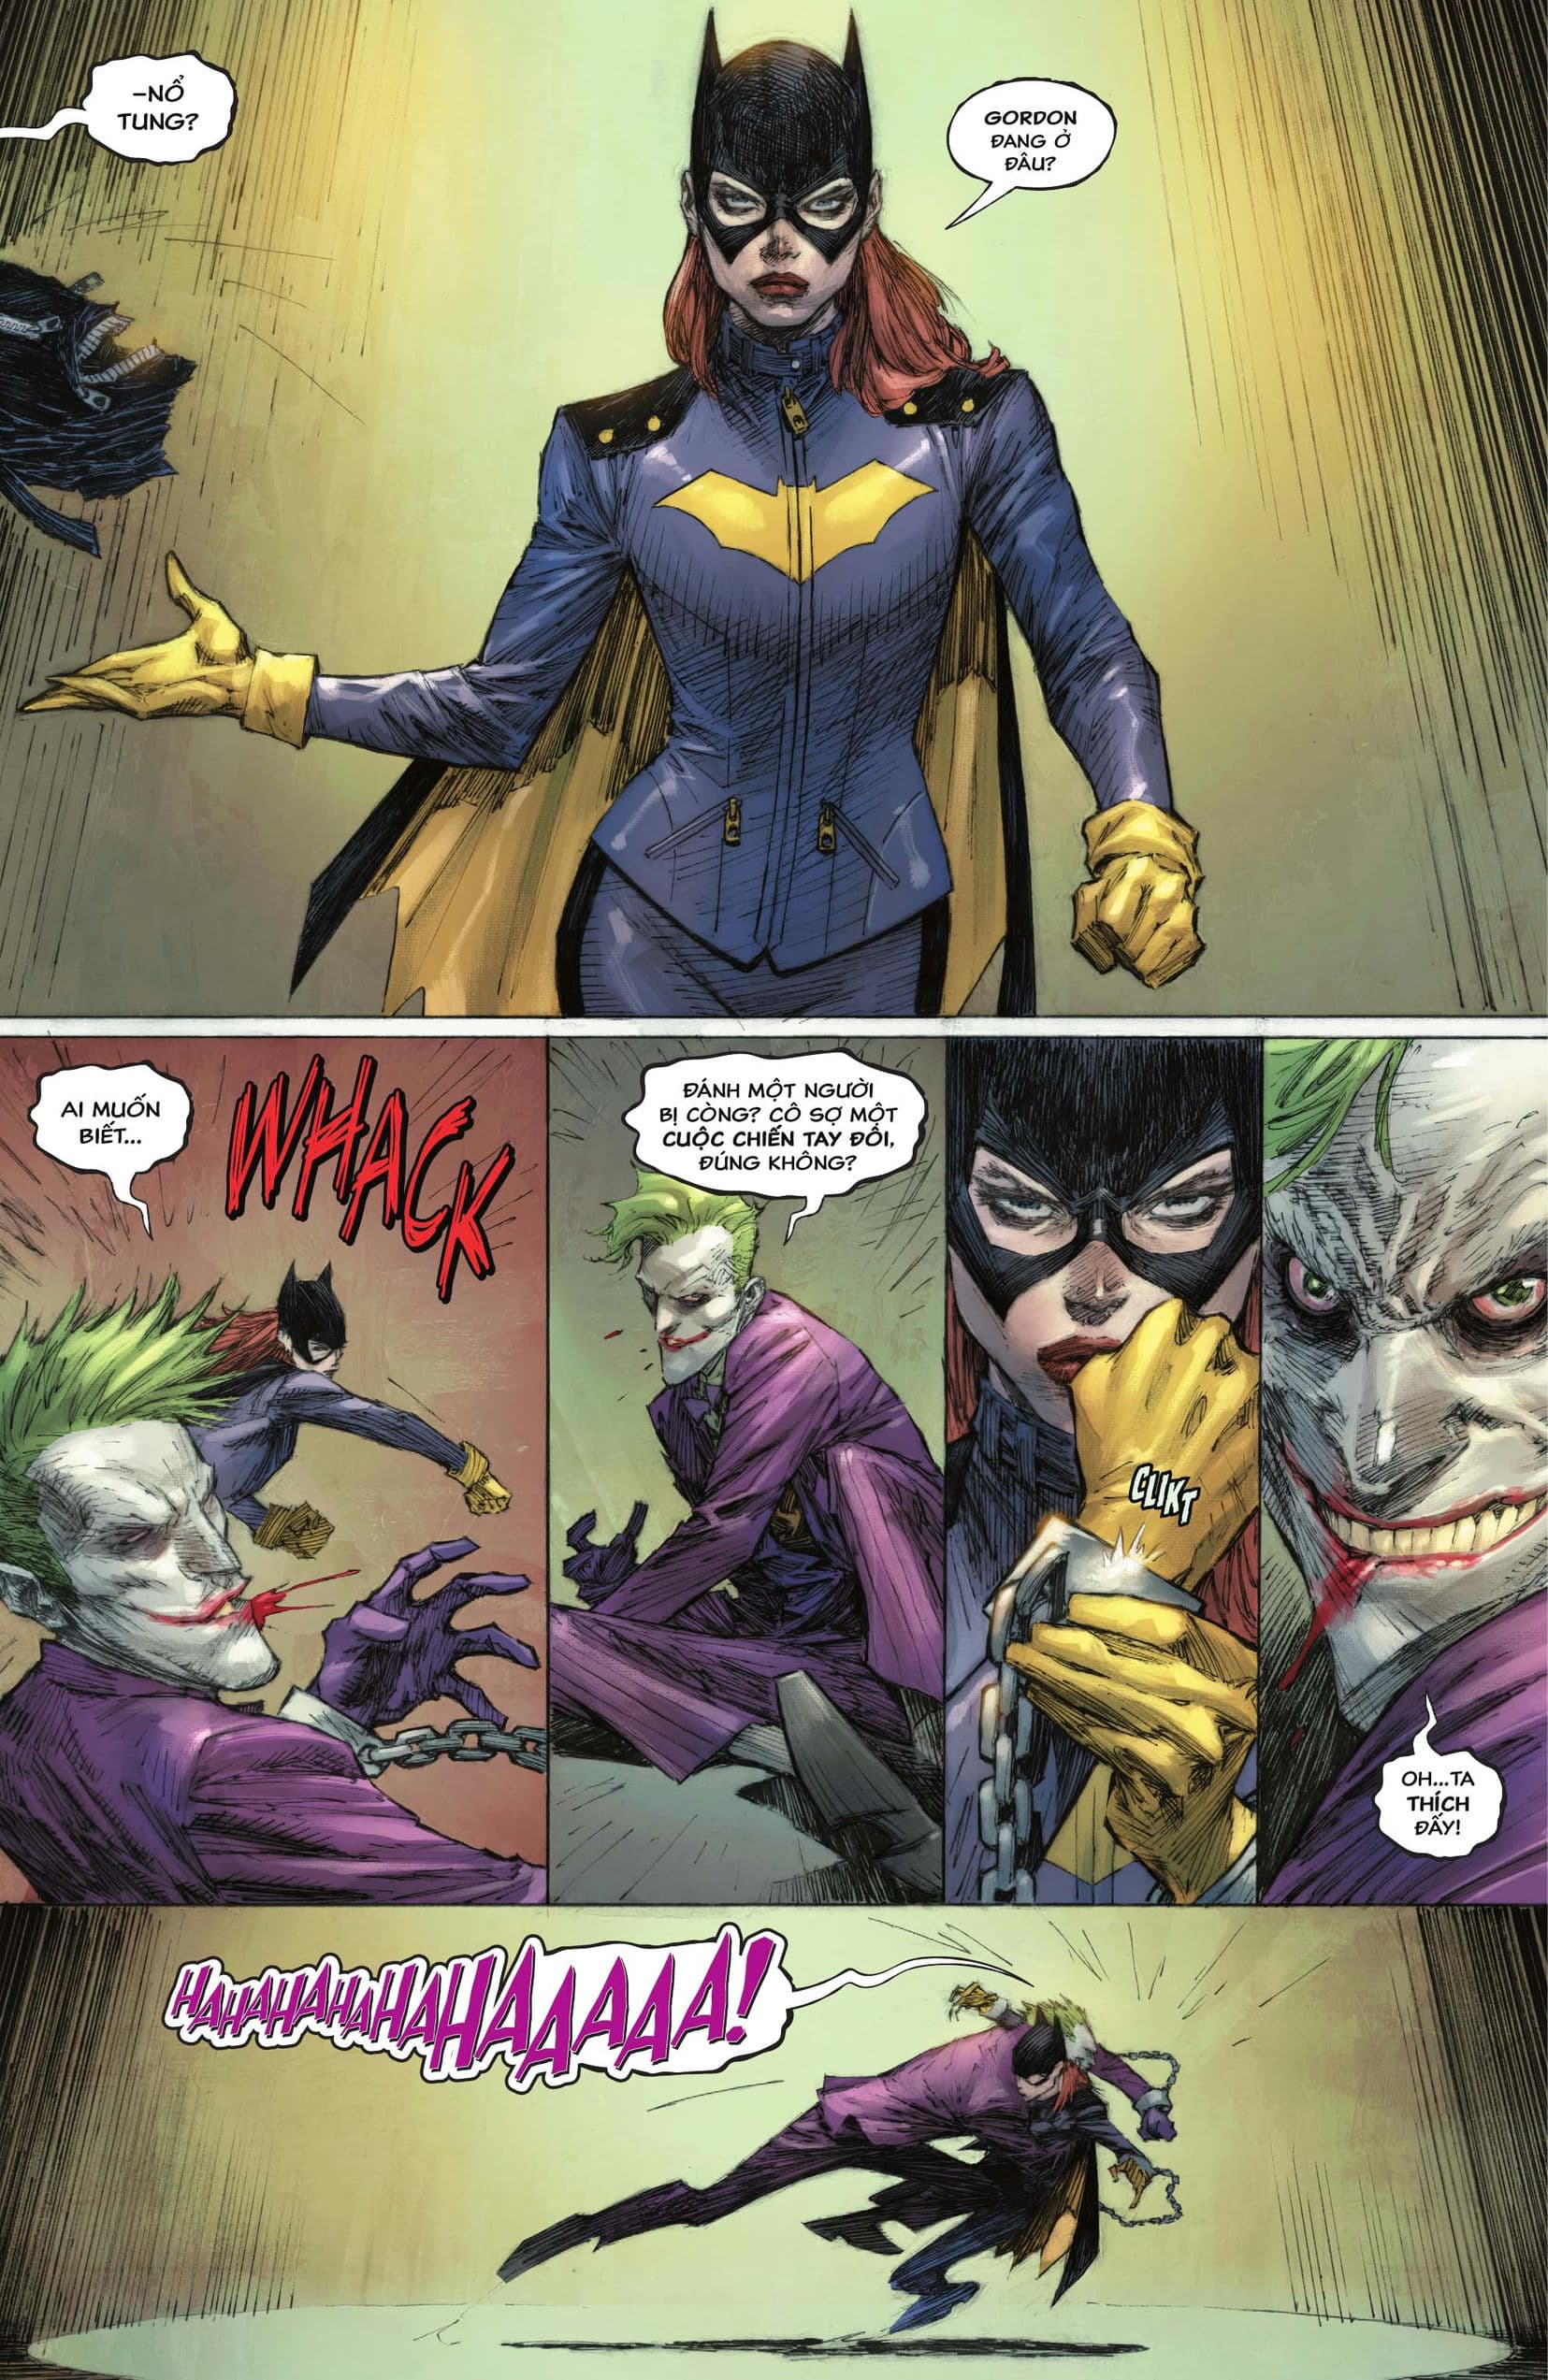 https://langgeek.net/wp-content/webpc-passthru.php?src=https://langgeek.net/wp-content/uploads/2023/04/Batman-_-The-Joker-The-Deadly-Duo-2022-005-013.jpg&nocache=1